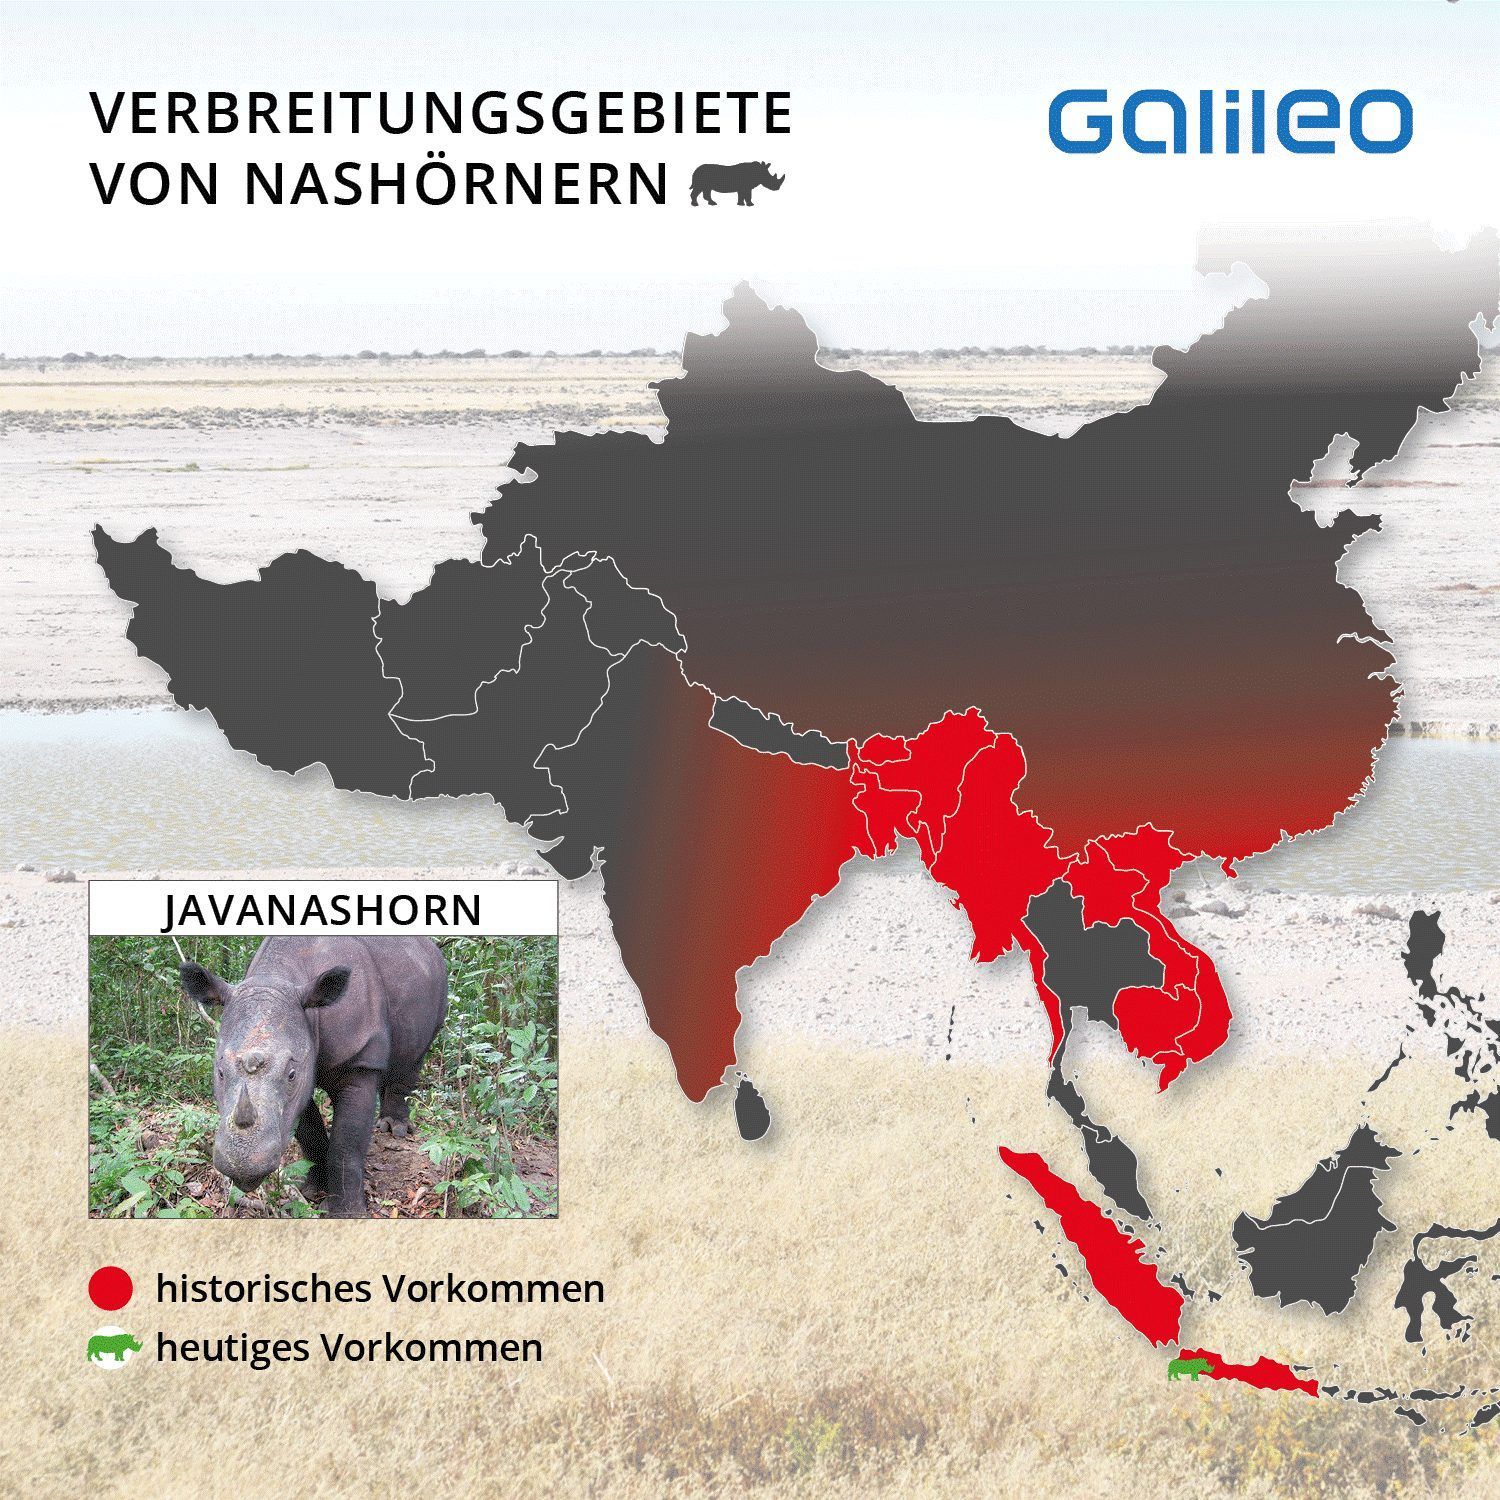 Java, Bangladesh, Myanmar, Thailand, Laos, Kambodscha, Vietnam, Borneo, Sumatra und der Süden Chinas - alles Länder, in denen das Javanashorn einst lebte. Heute gibt es nur noch eine Restpopulation im Ujung-Kulon-Nationalpark an der Westspitze von Java.
